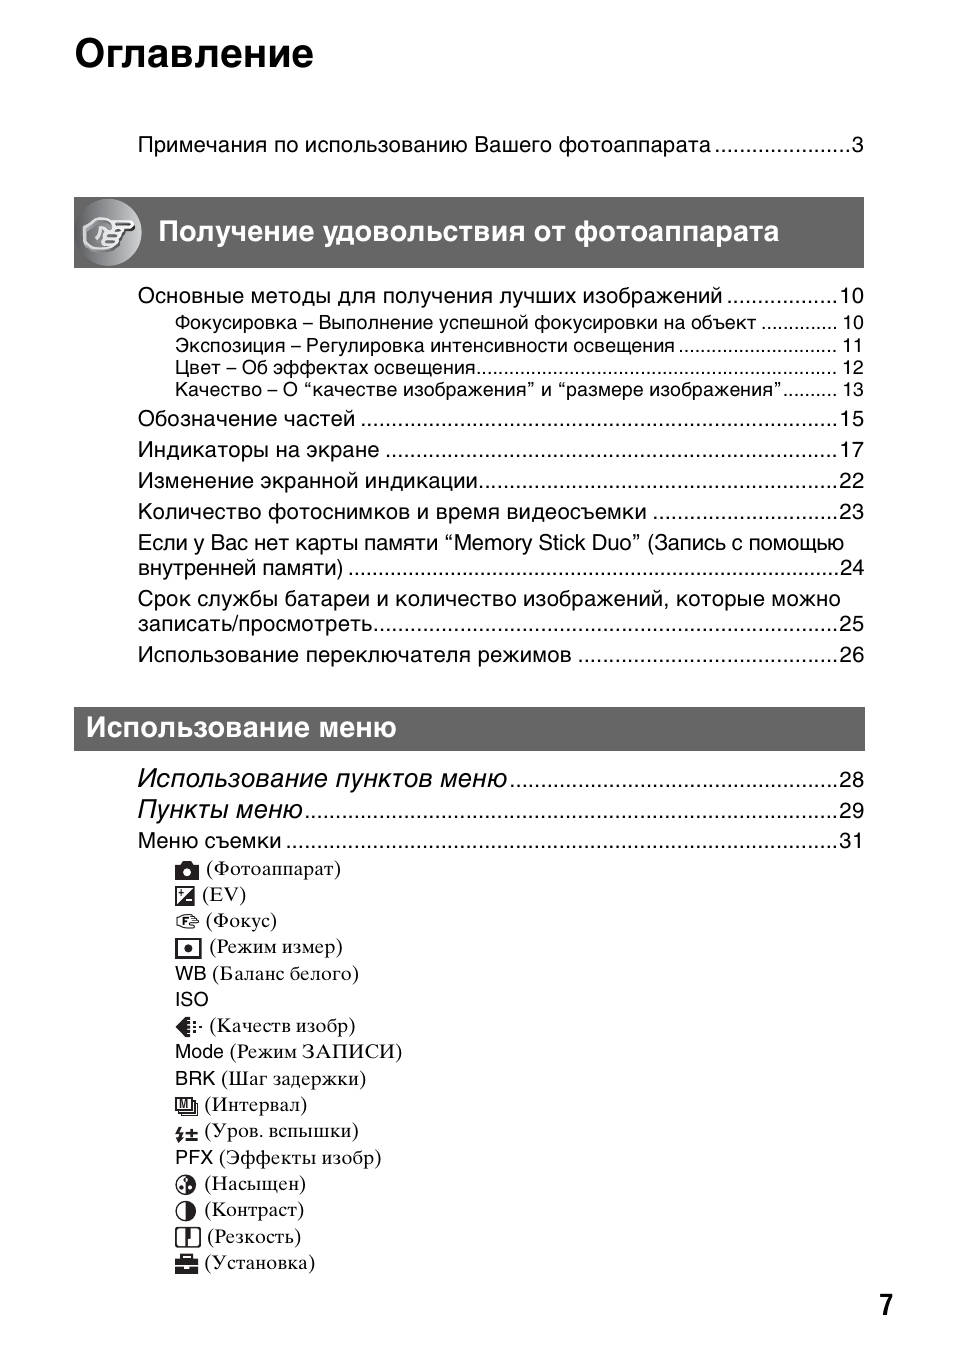 Оглавление, Использование пунктов меню, Пункты меню | Инструкция по эксплуатации Sony DSC-T5 | Страница 7 / 123